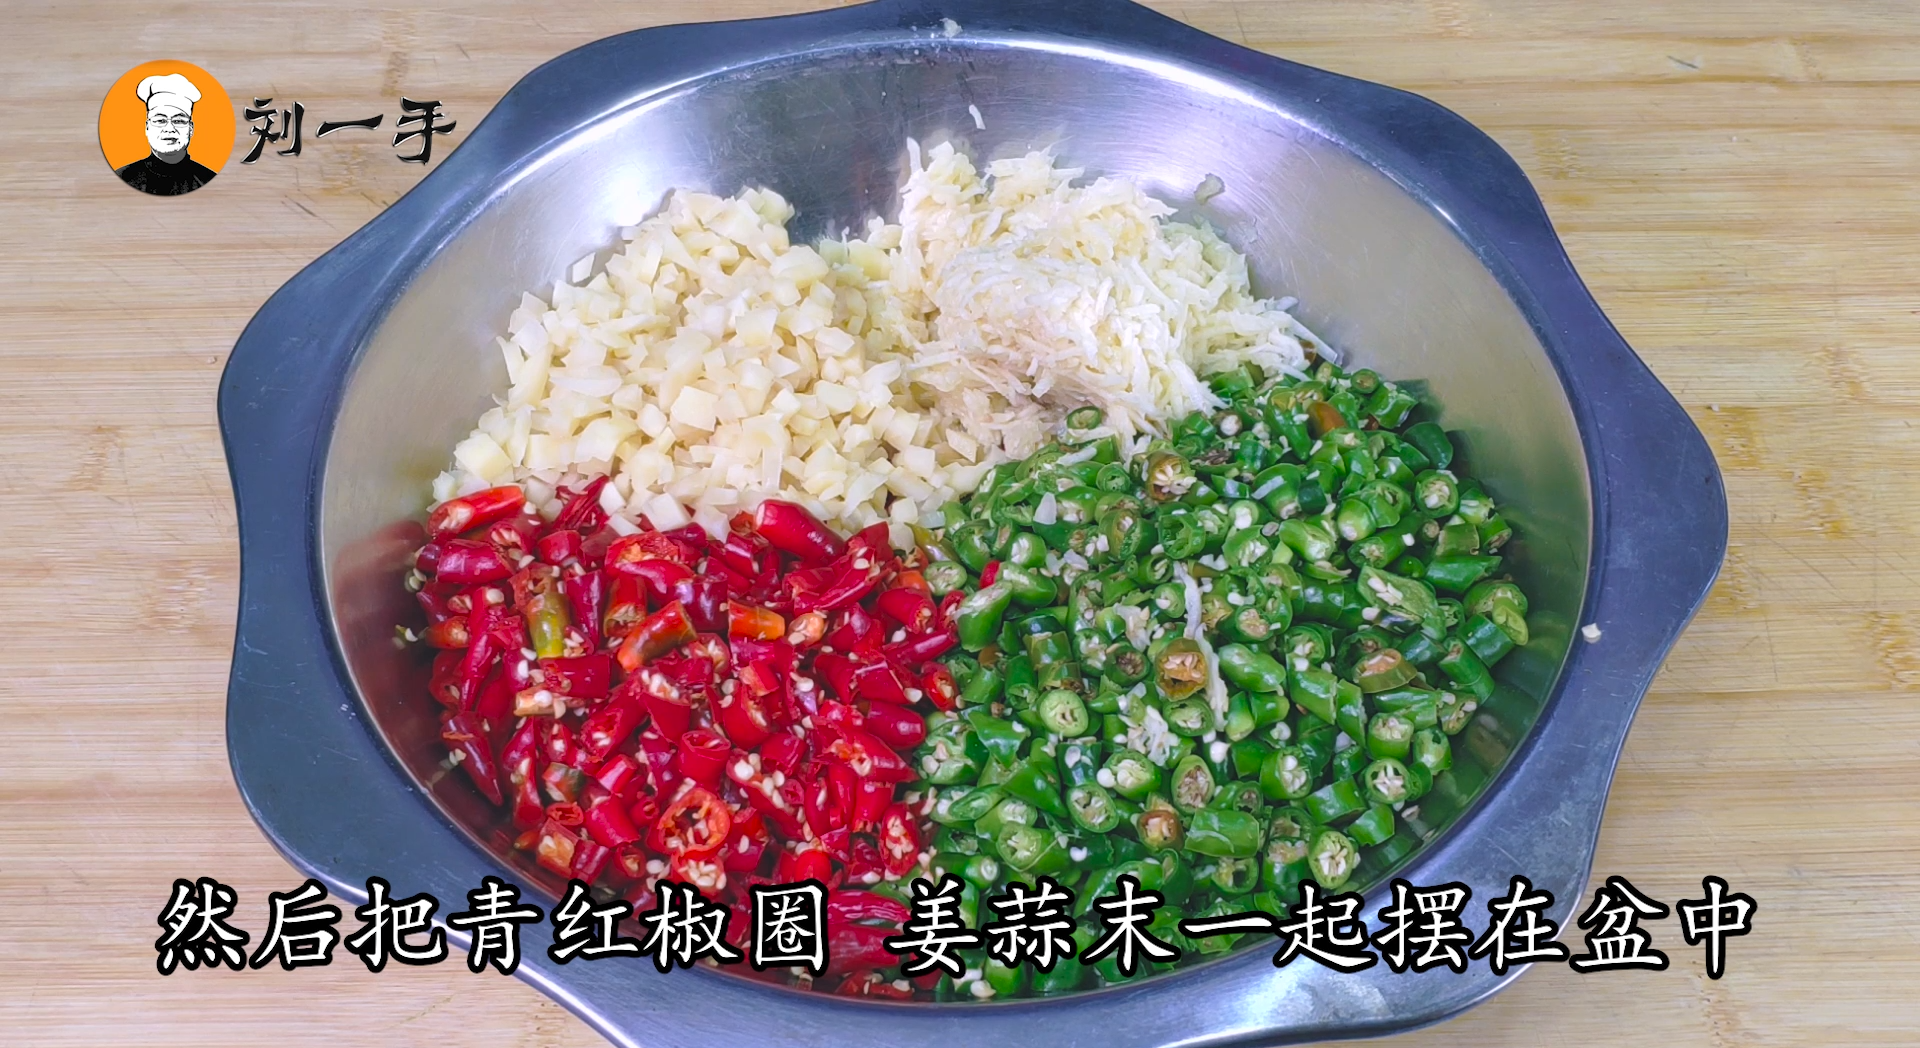 自制豆豉辣椒酱的正宗做法，配方比例教给你，香辣过瘾，一大盆不够吃